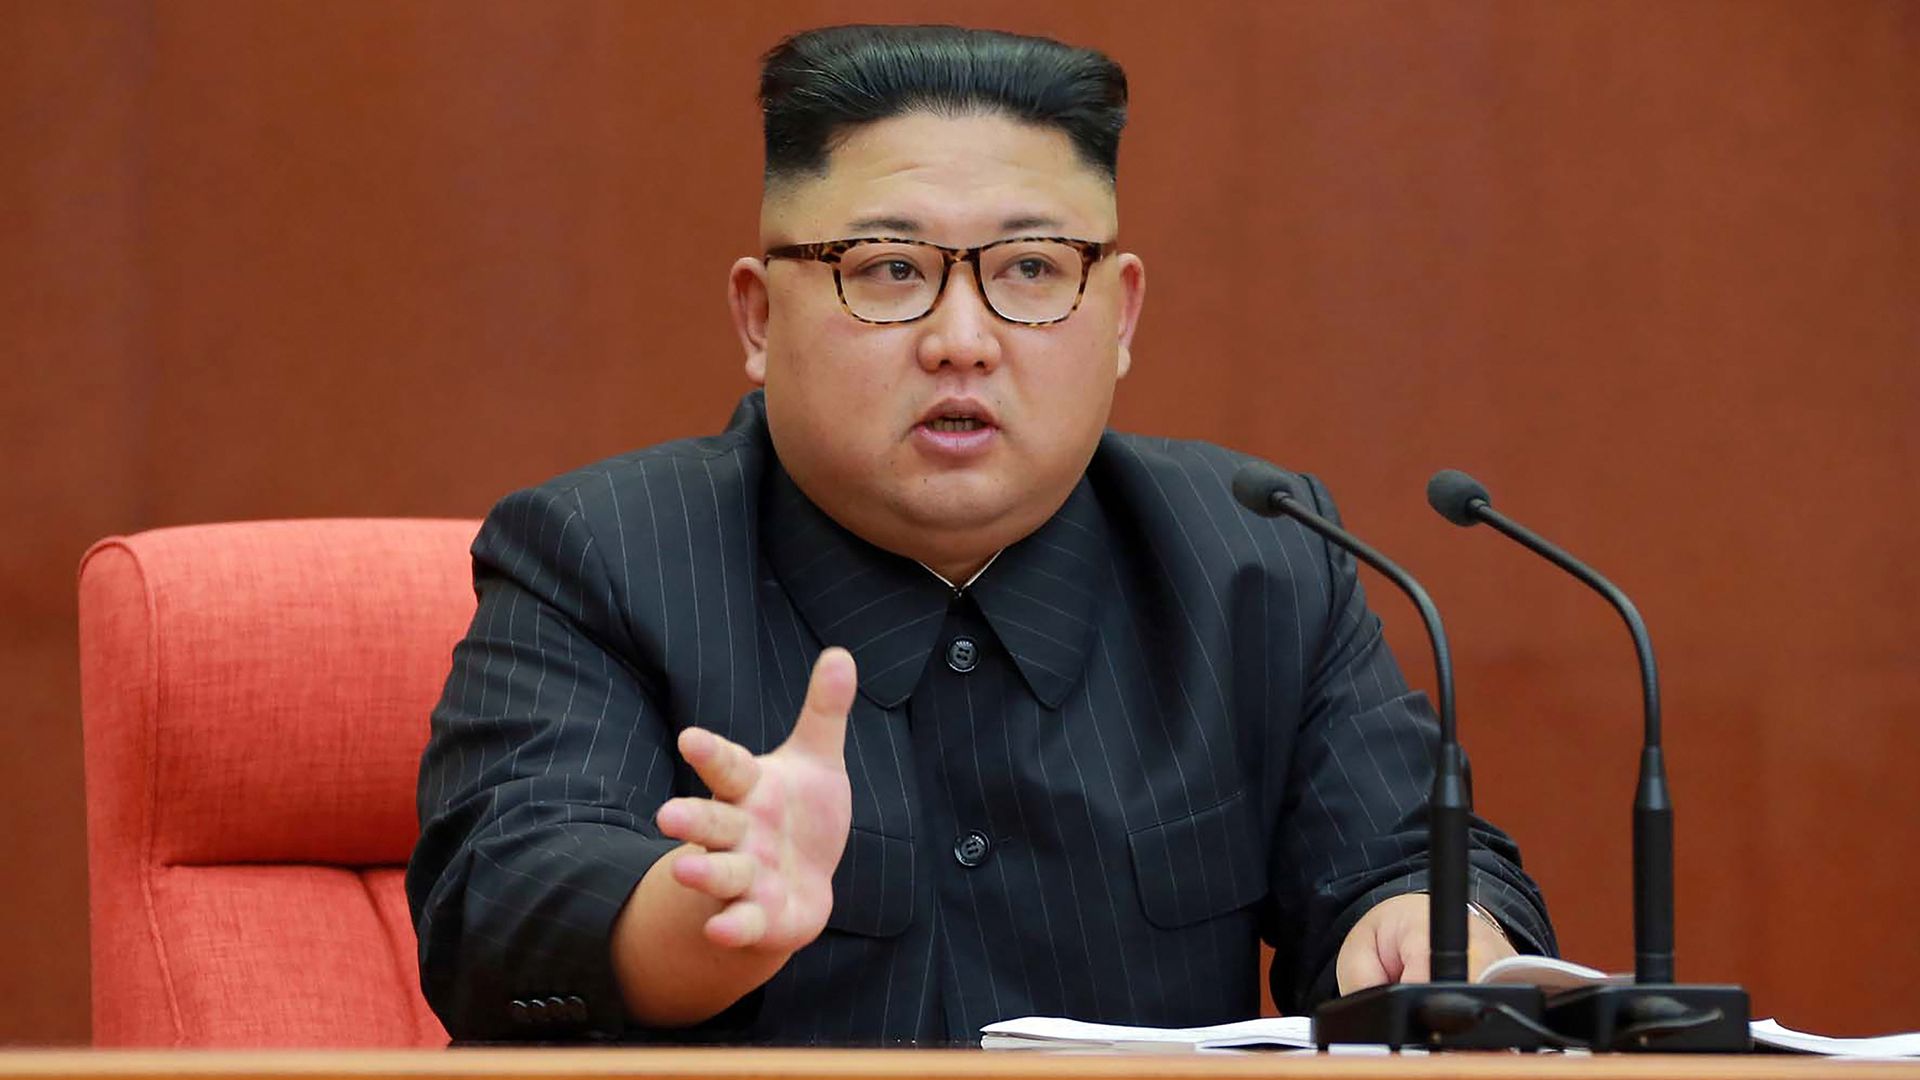 Kim Jong-un seated giving speech